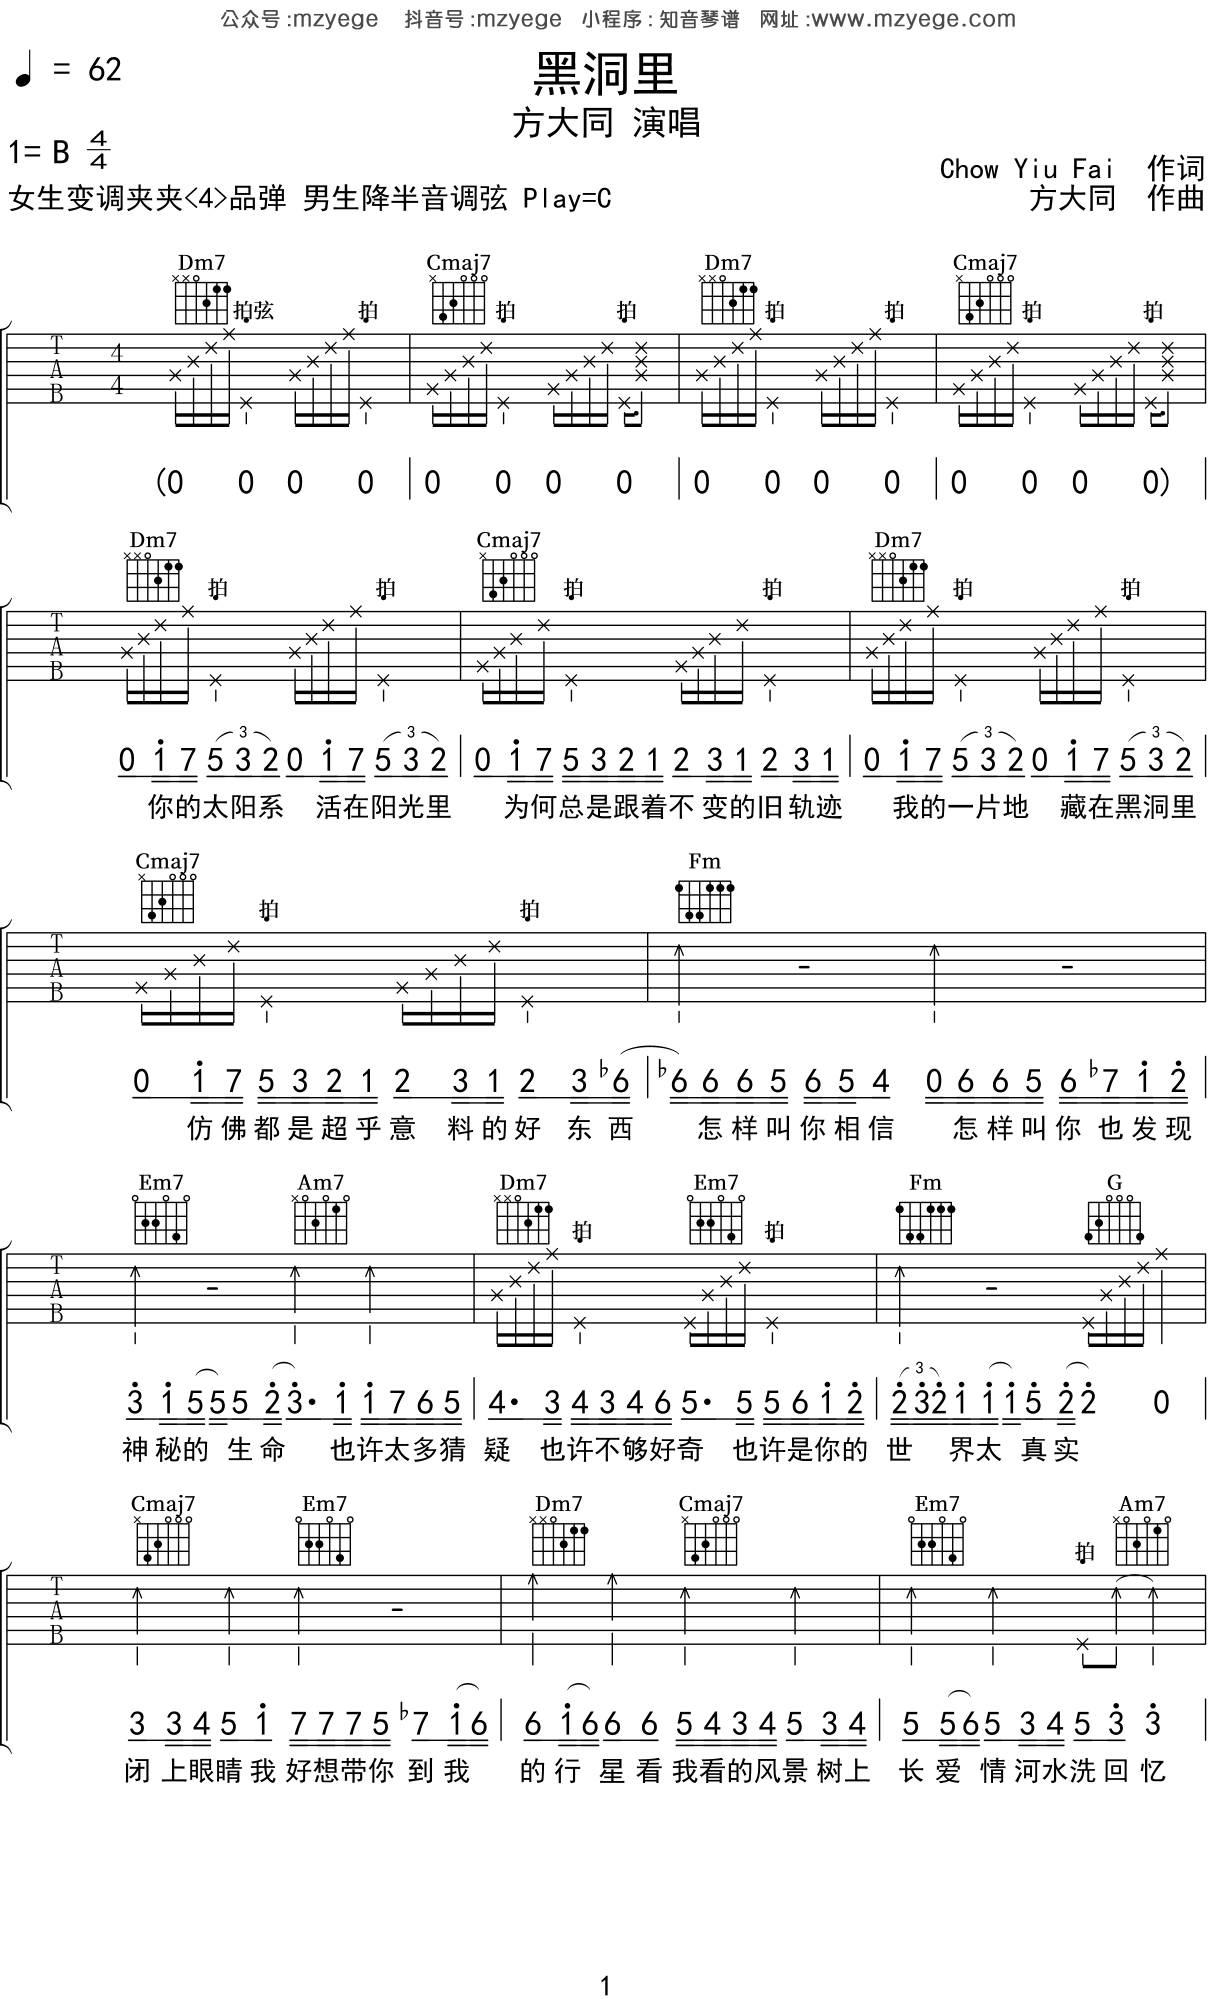 【爵士吉他入门系列】在2-5-1上进行solo 课程谱子 - 哔哩哔哩